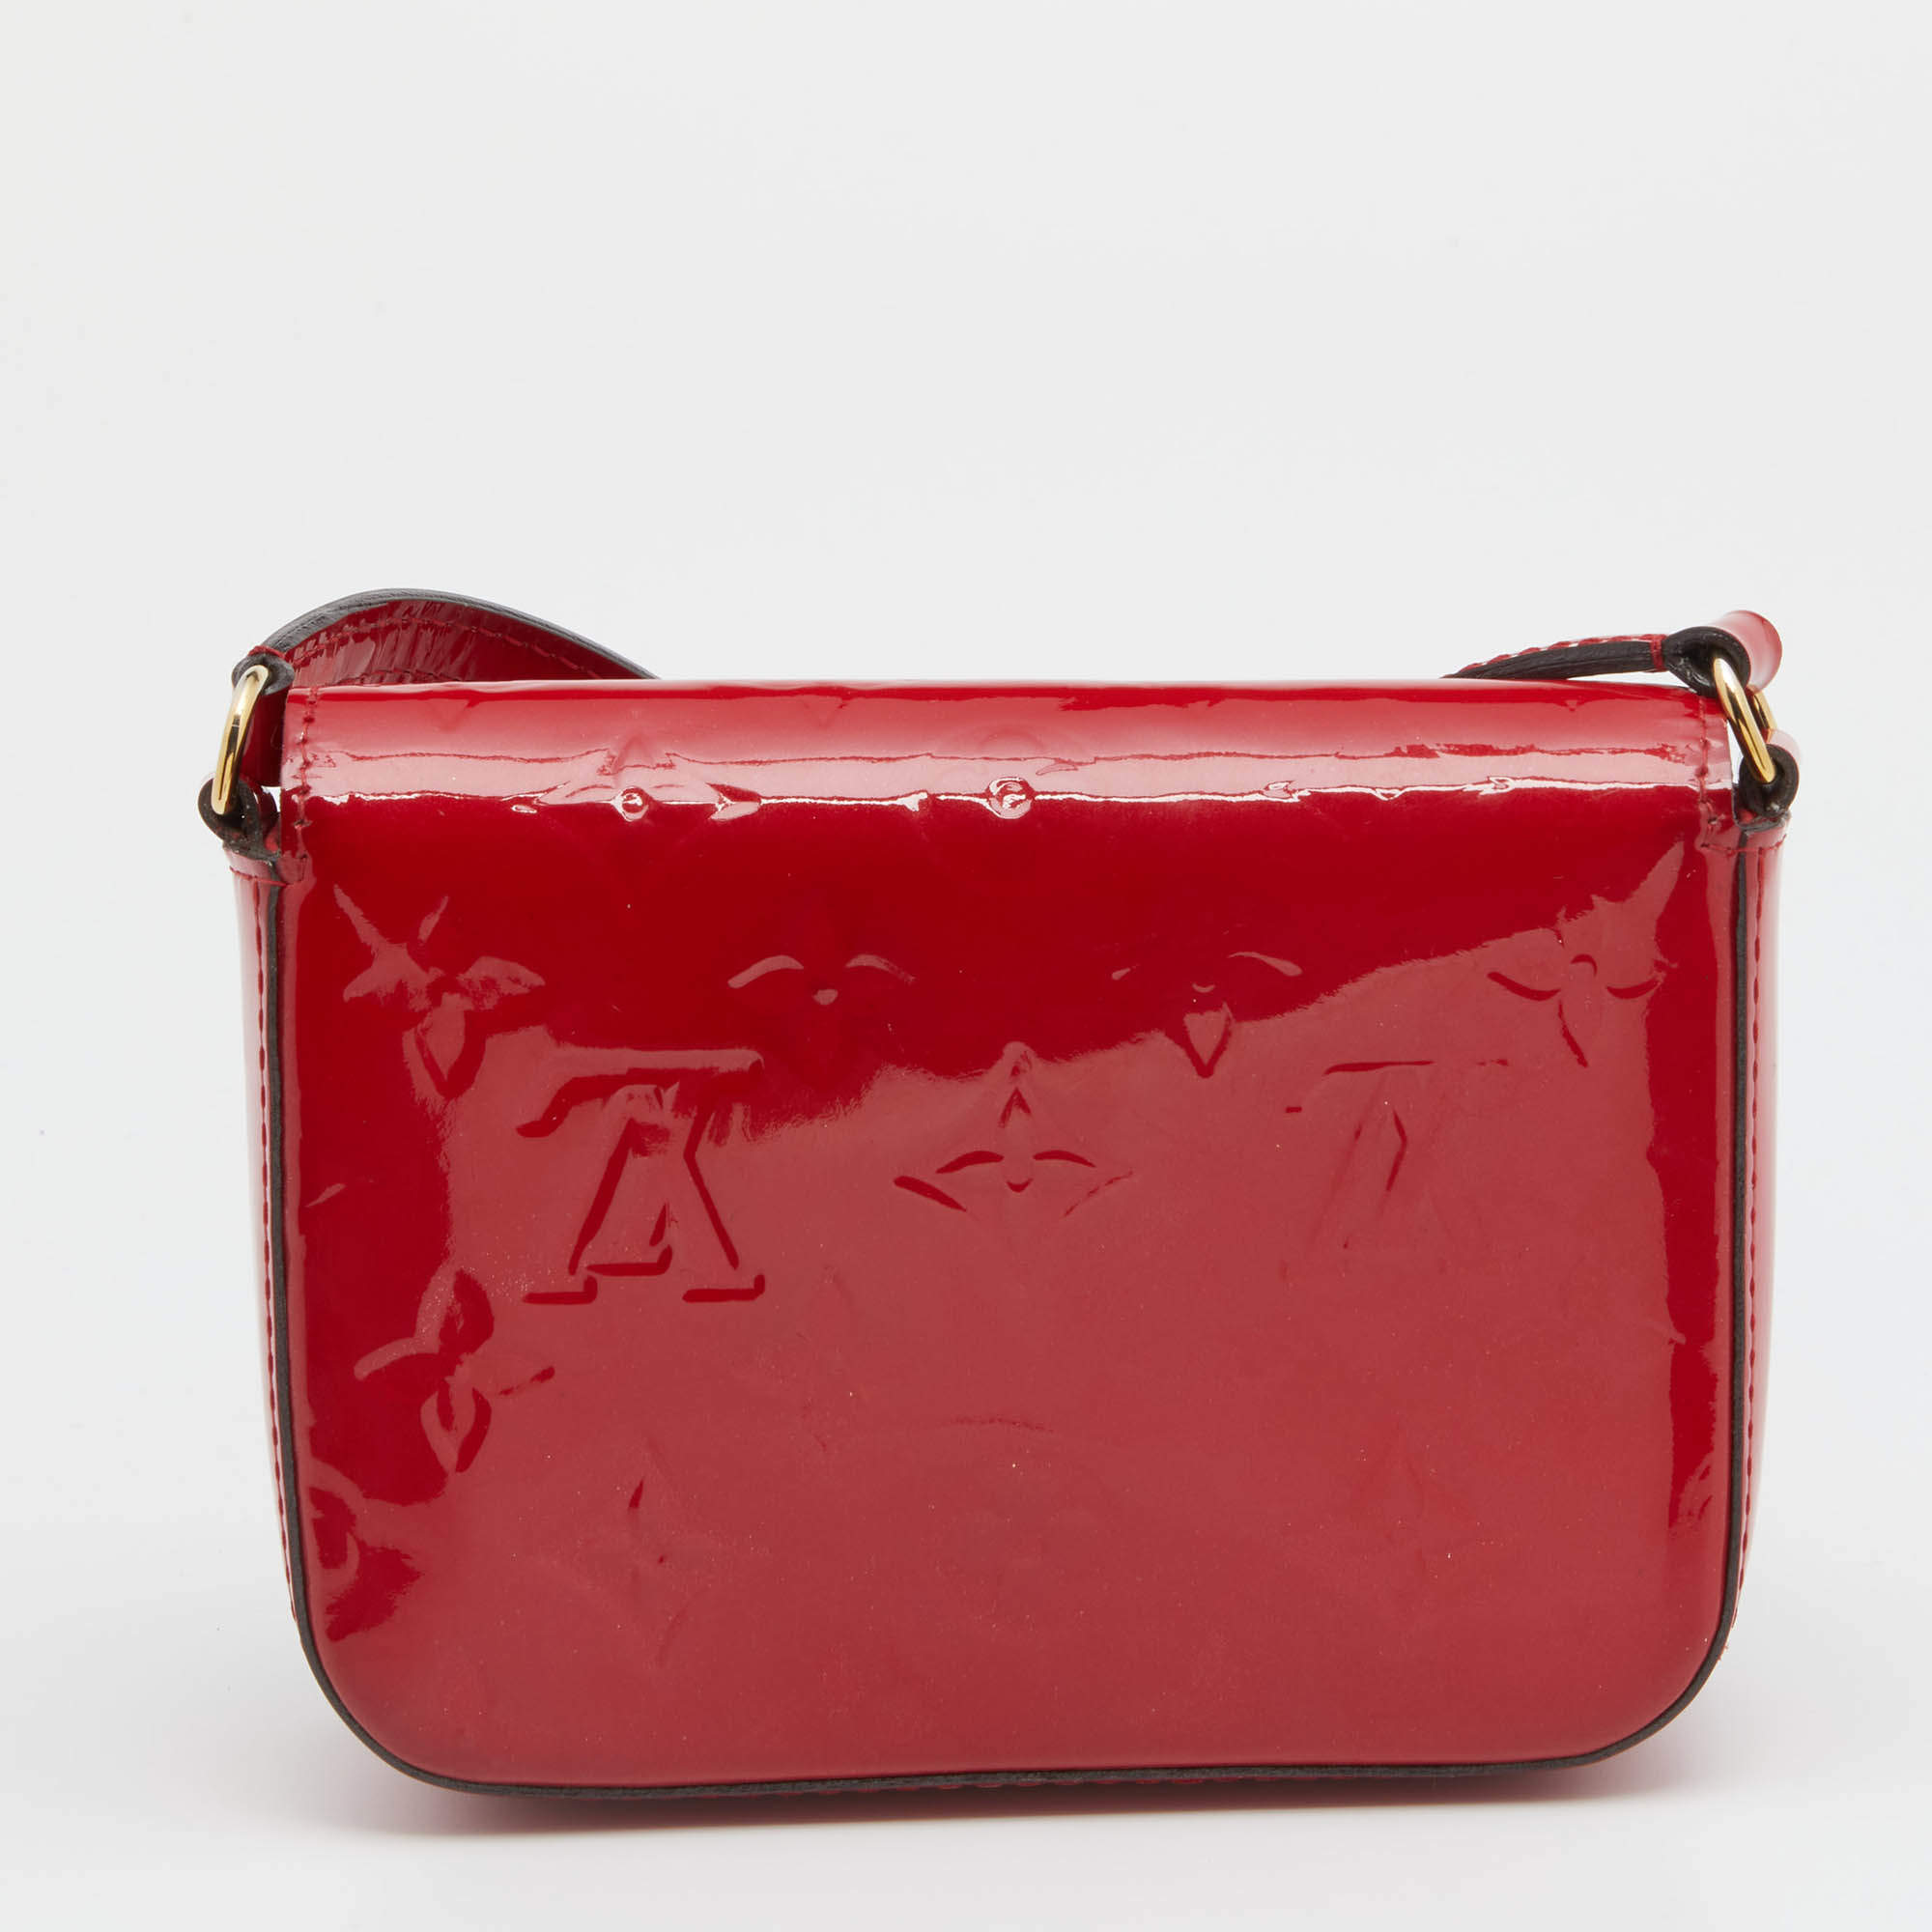 FWRD Renew ESG Luxury Louis Vuitton Cherry Sac Tote Bag in Monogram